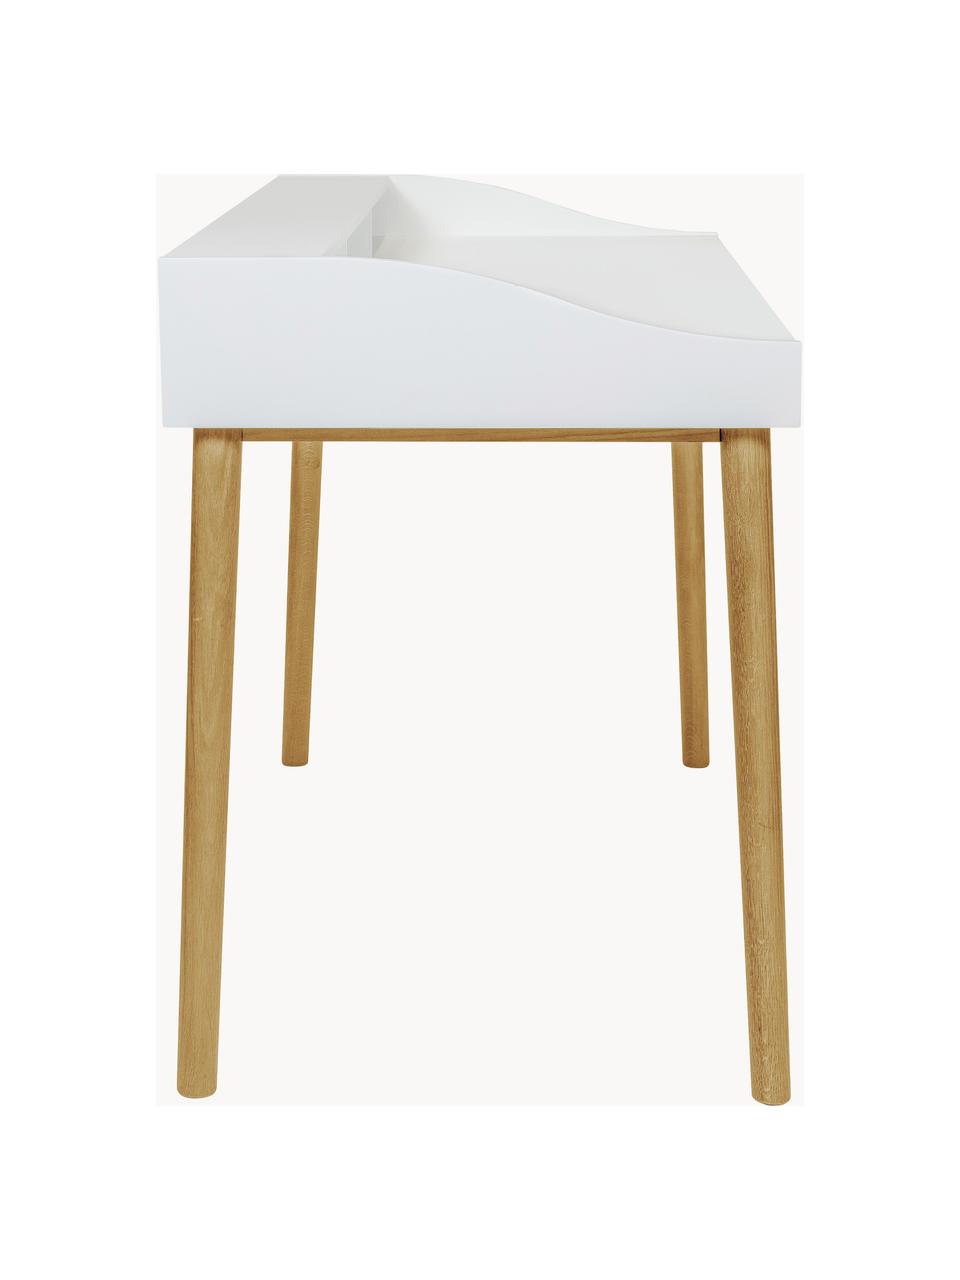 Schreibtisch Lindenhof mit kleiner Schublade, Beine: Eichenholz, lackiert Dies, Weiß, Eichenholz, B 120 x T 60 cm